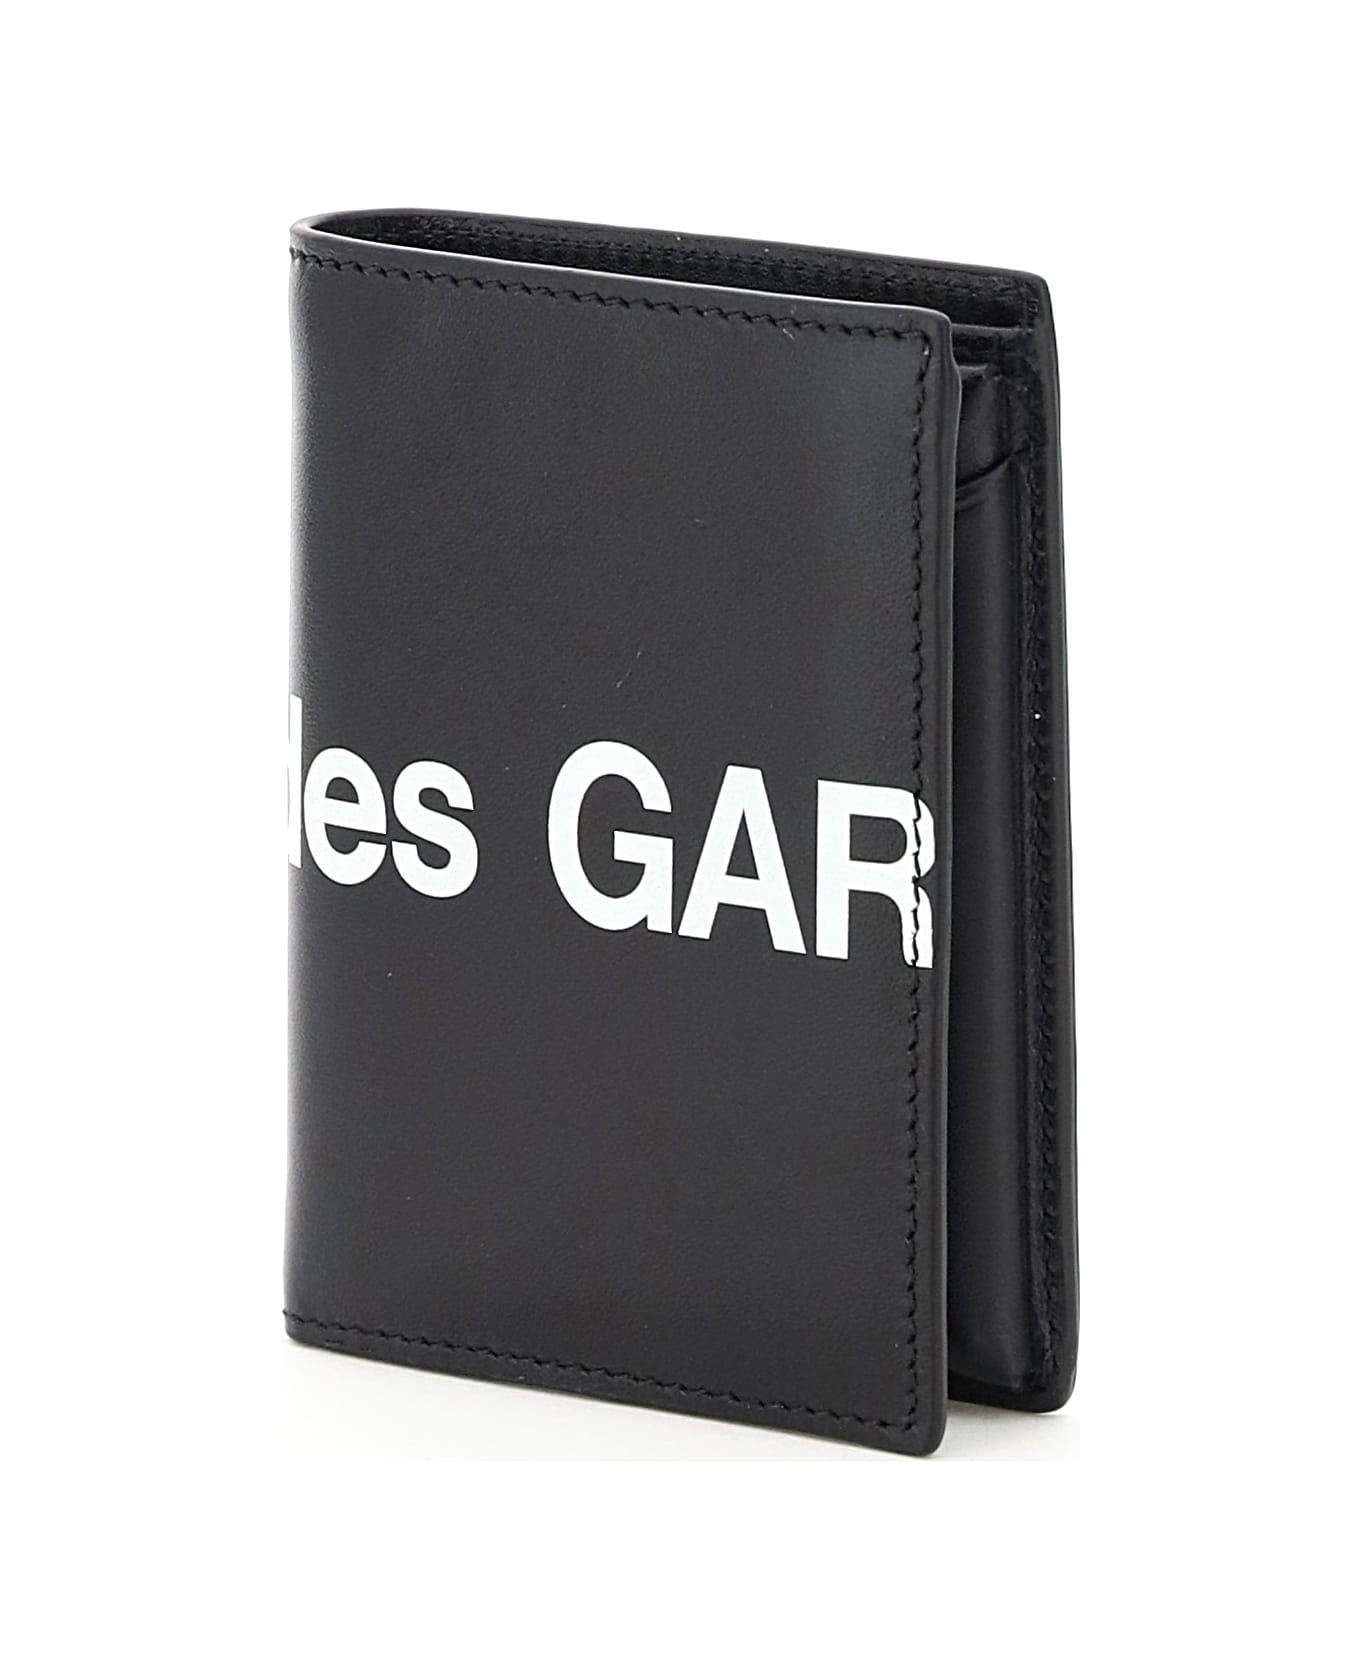 Comme des Garçons Wallet Small Bifold Wallet With Huge Logo - BLACK (Black)